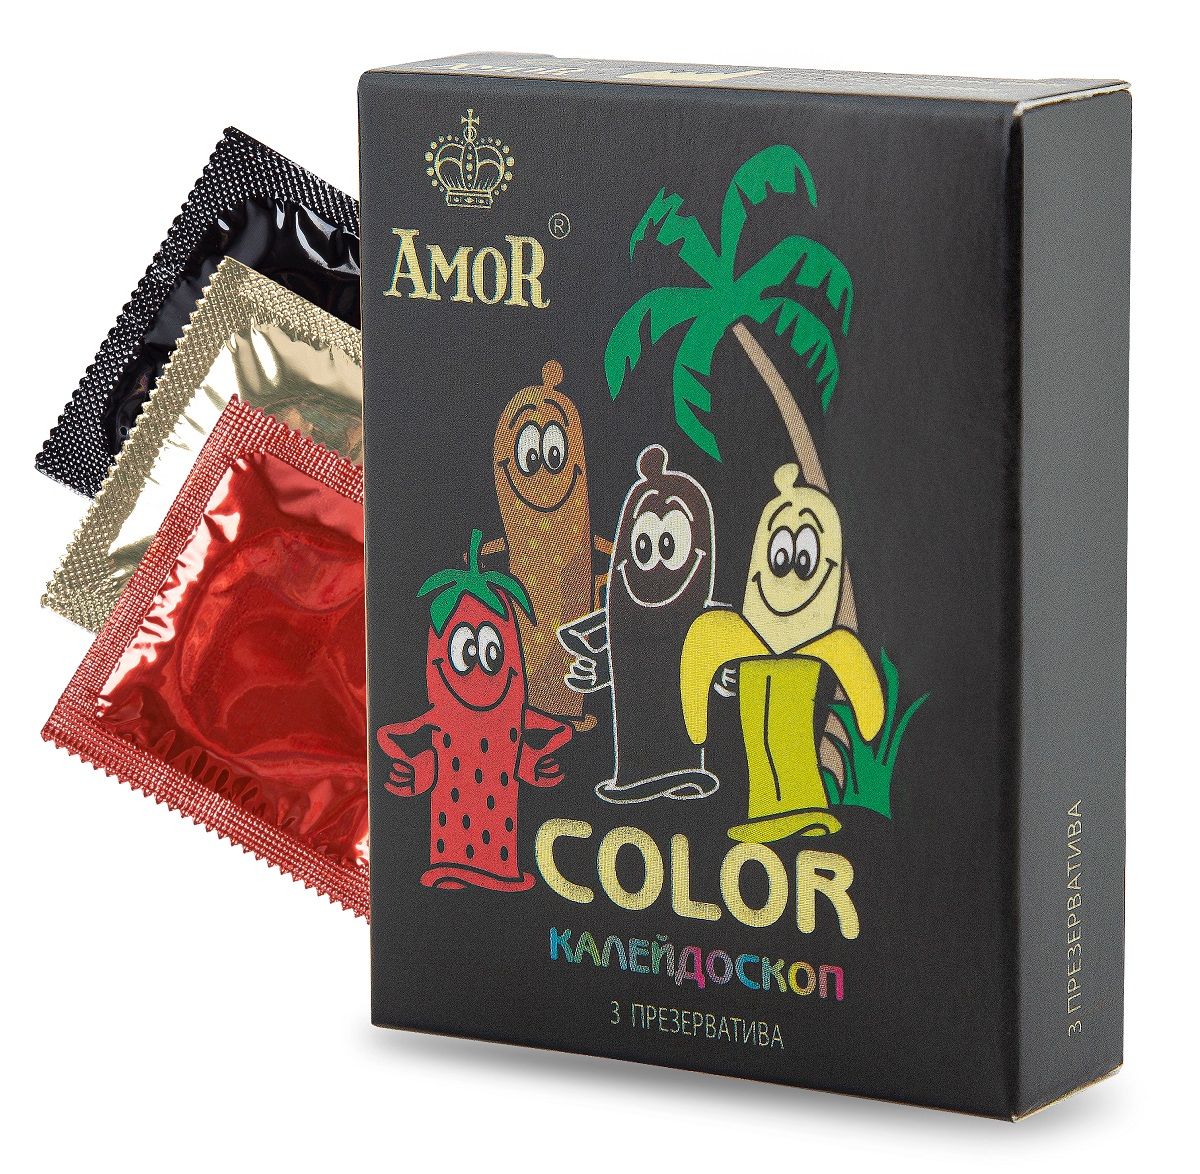 Ароматизированные презервативы AMOR Color Яркая линия цветные 3 шт.  - купить со скидкой